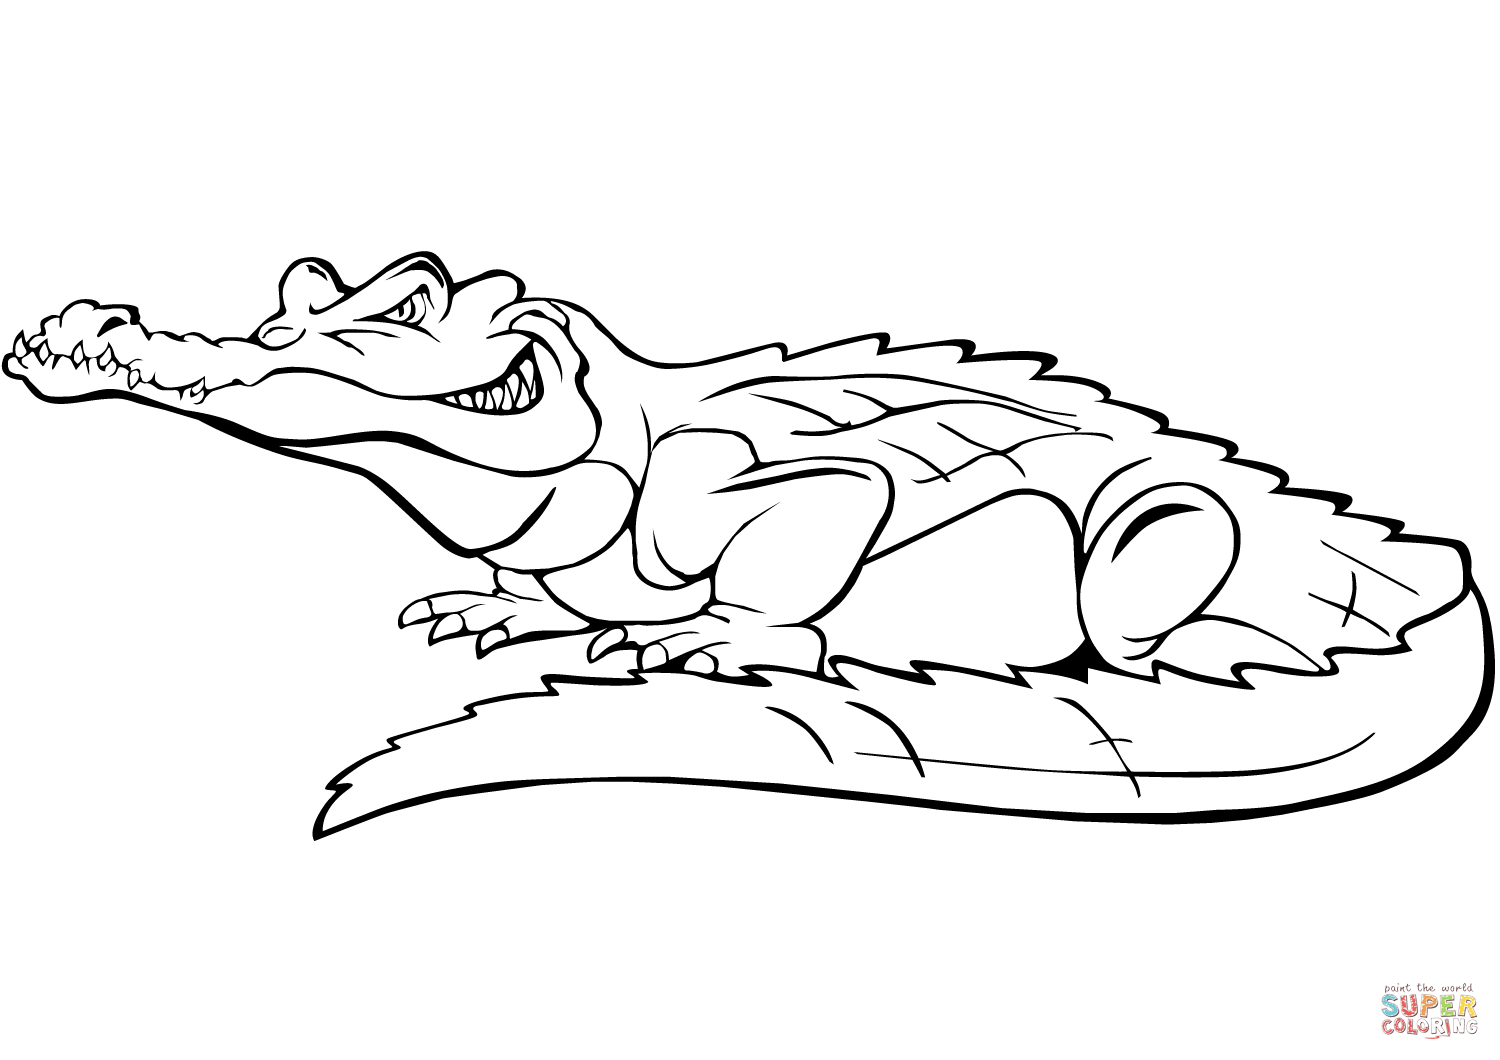 Ausmalbild: Comic-Krokodil | Ausmalbilder Kostenlos Zum bestimmt für Krokodil Ausmalbilder Ausdrucken